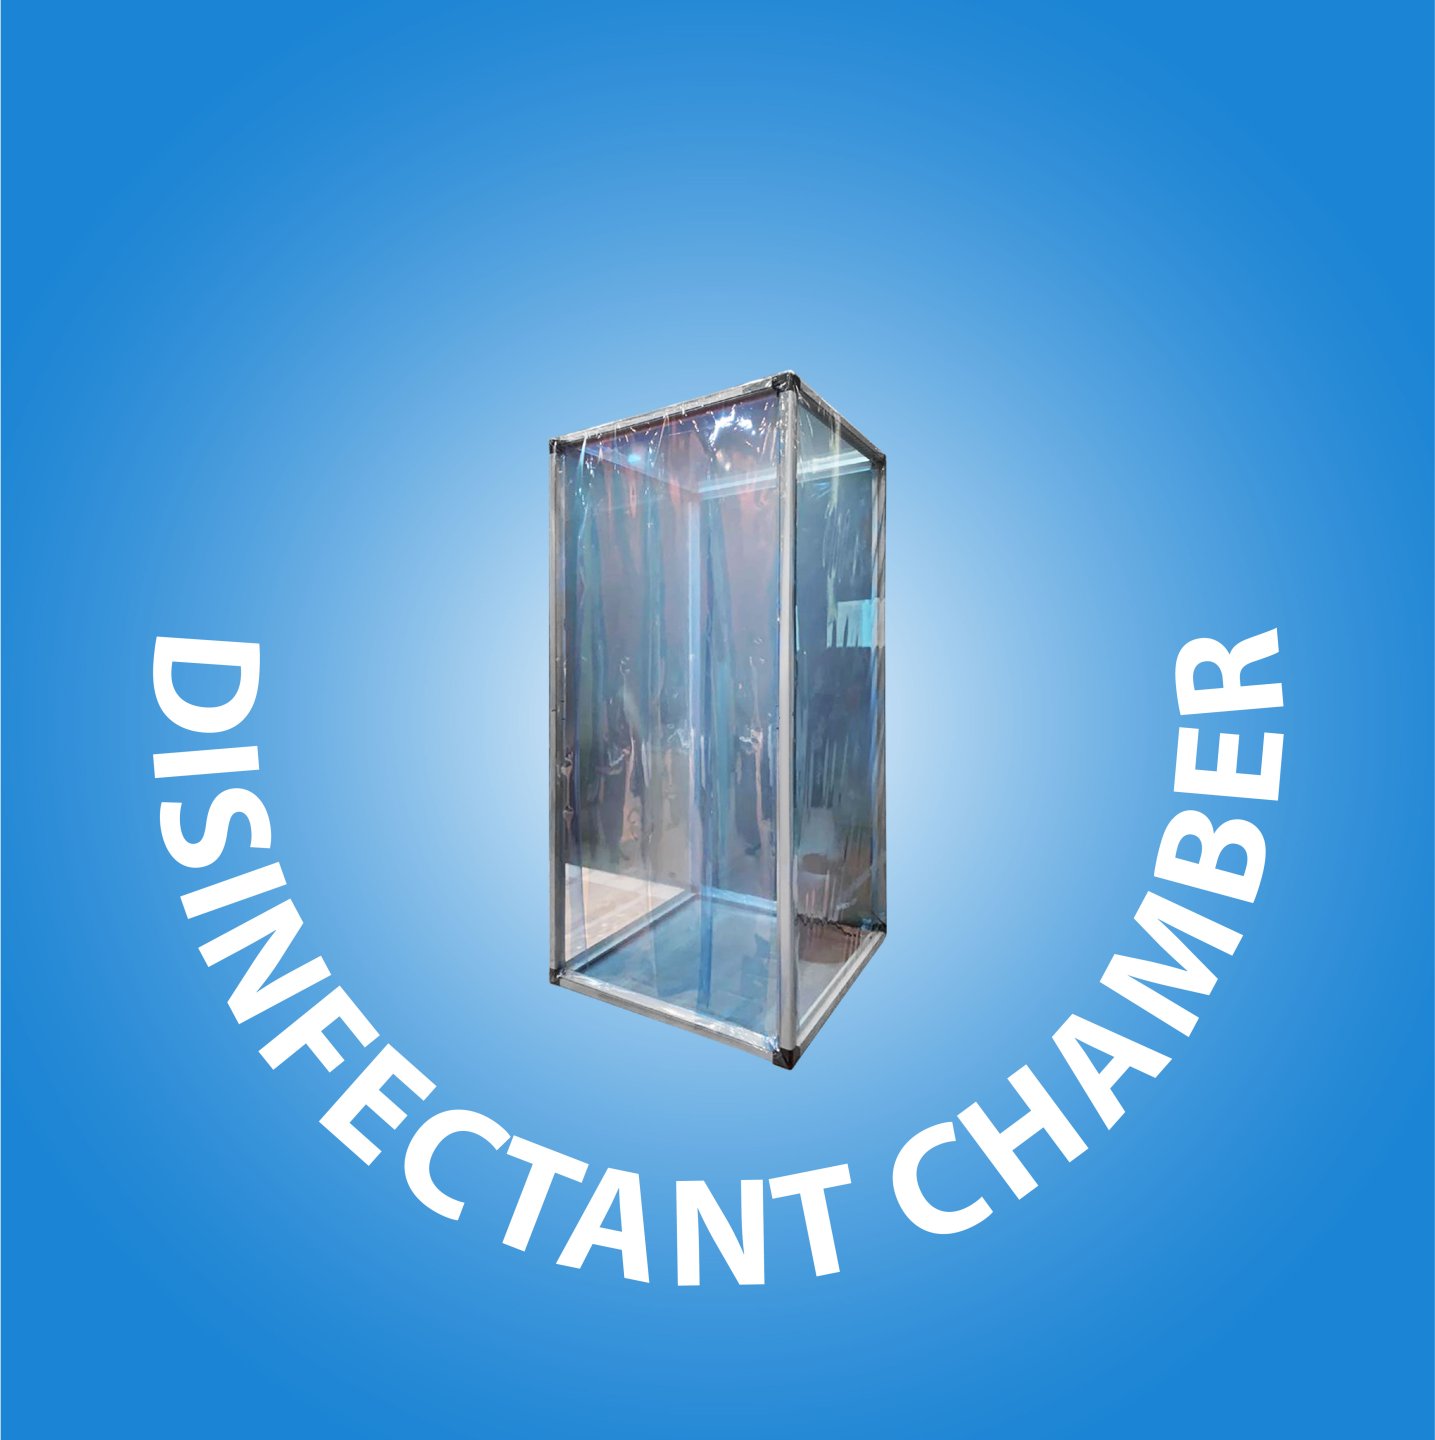  Disinfectant Chamber cover kategori website 44